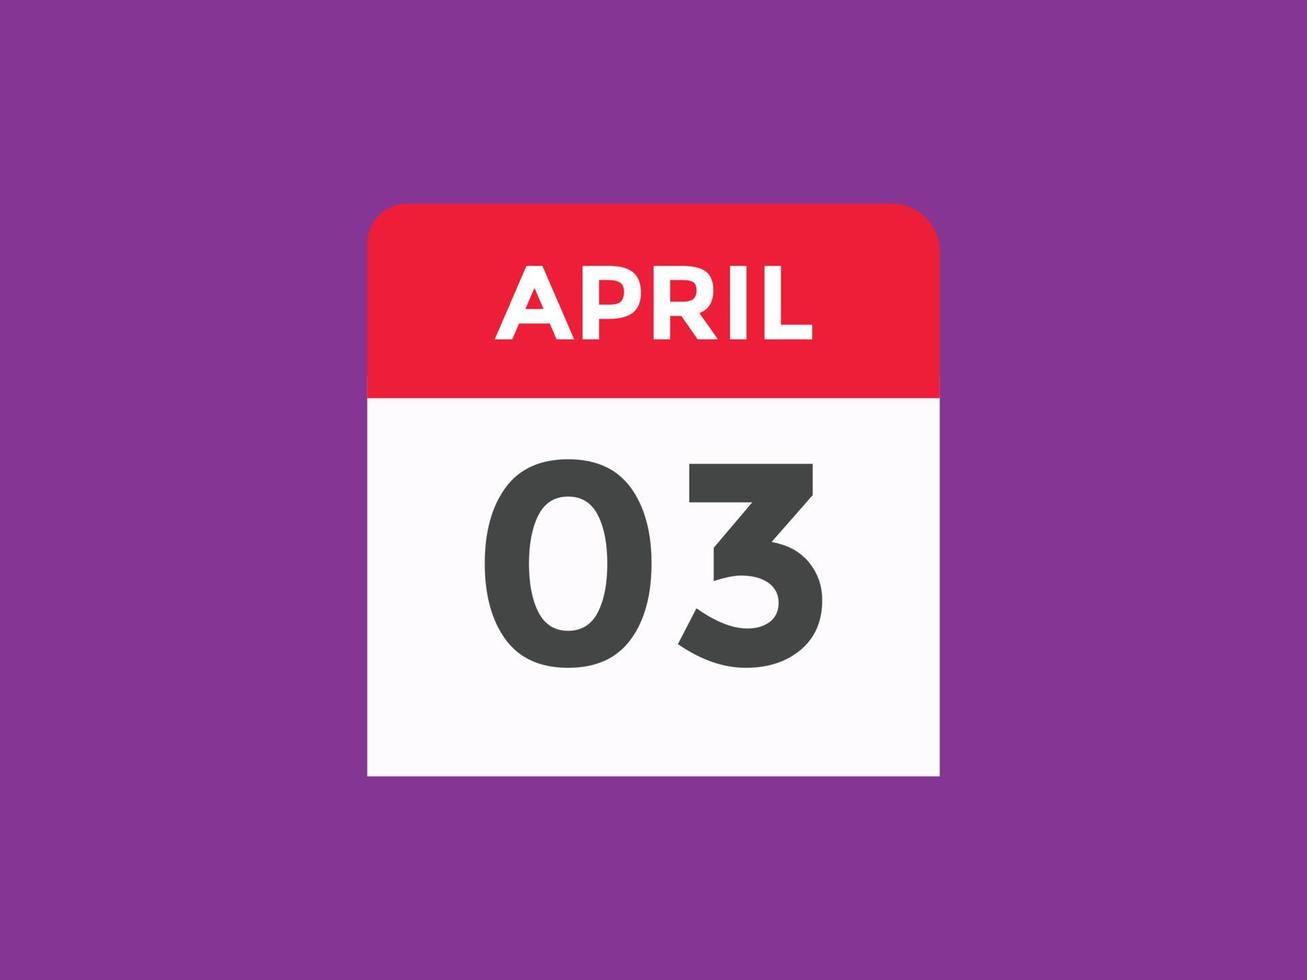 aprile 3 calendario promemoria. 3 ° aprile quotidiano calendario icona modello. calendario 3 ° aprile icona design modello. vettore illustrazione